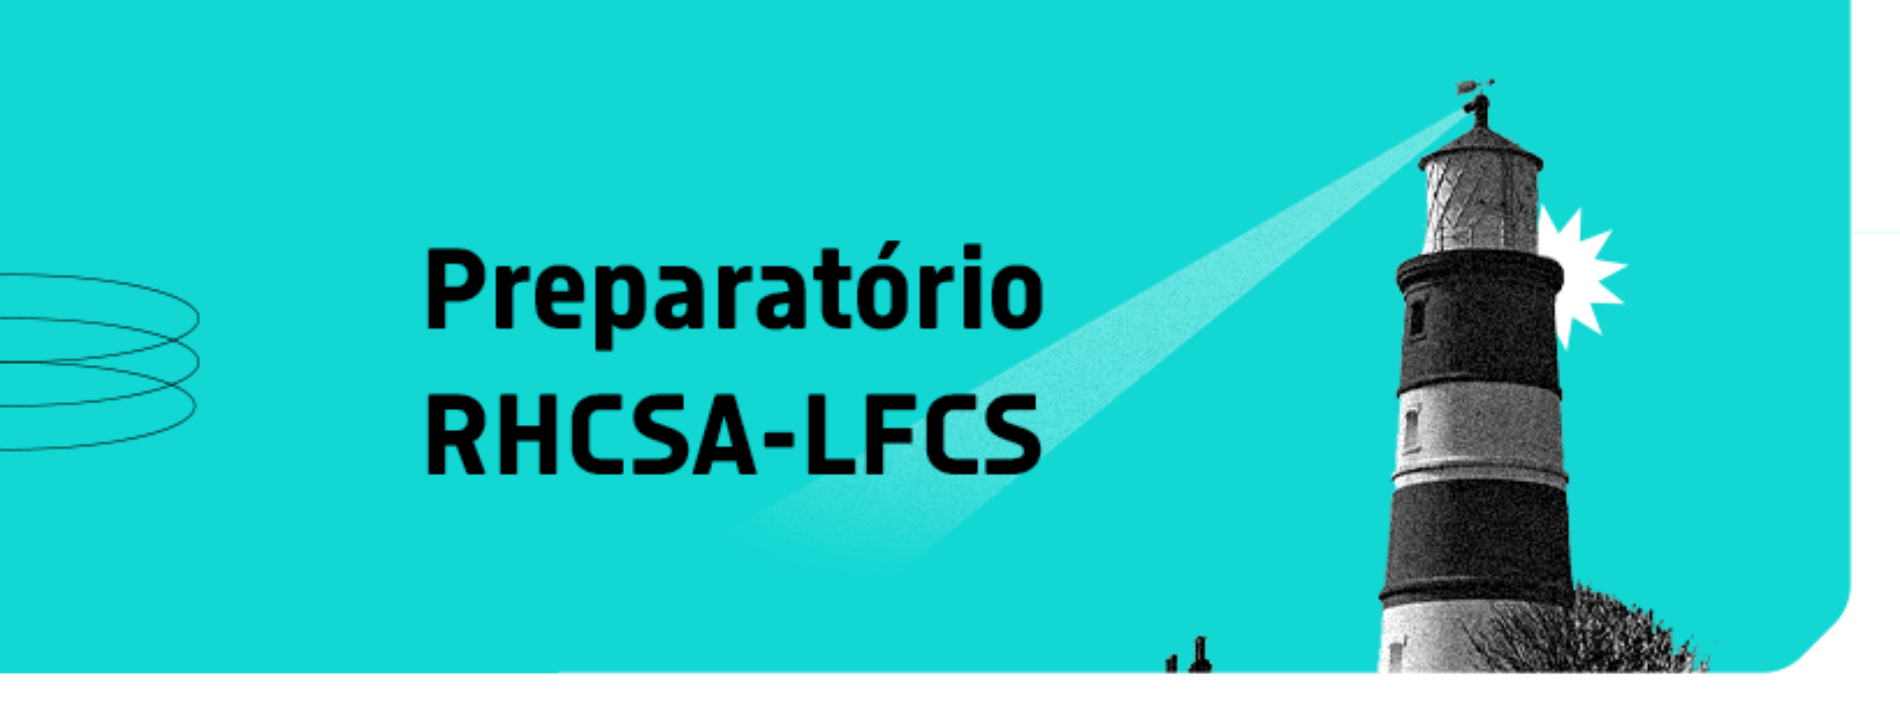 Prepare-se para a certificação RHCSA-LFCS e destaque-se no mercado de TI